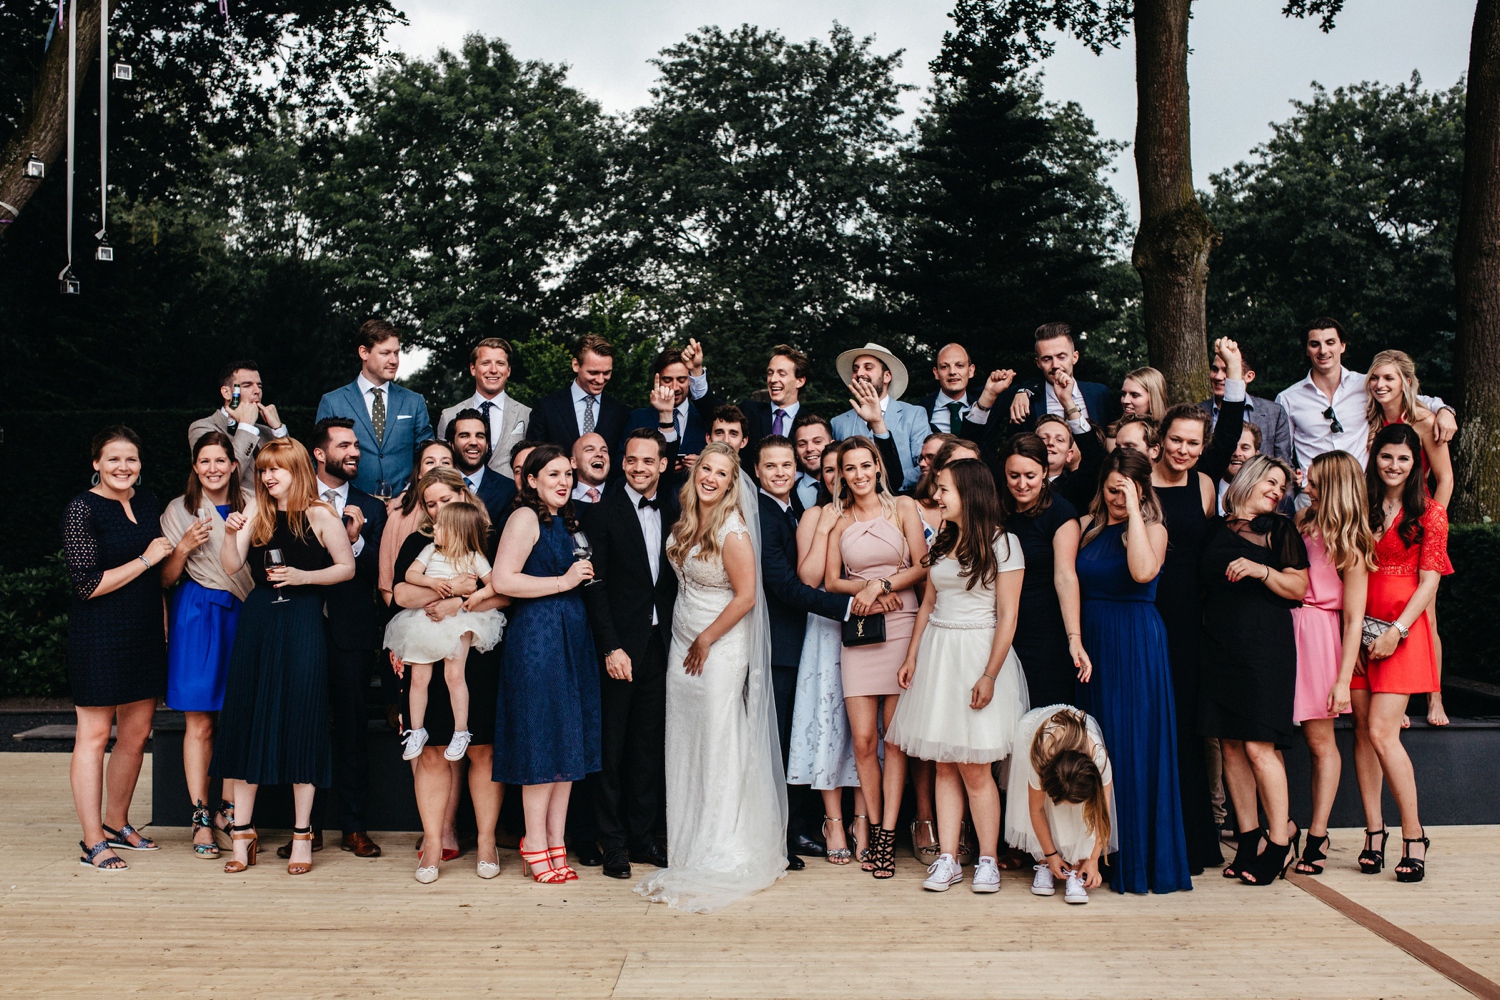 Groepsfoto op de bruiloft met alle gasten